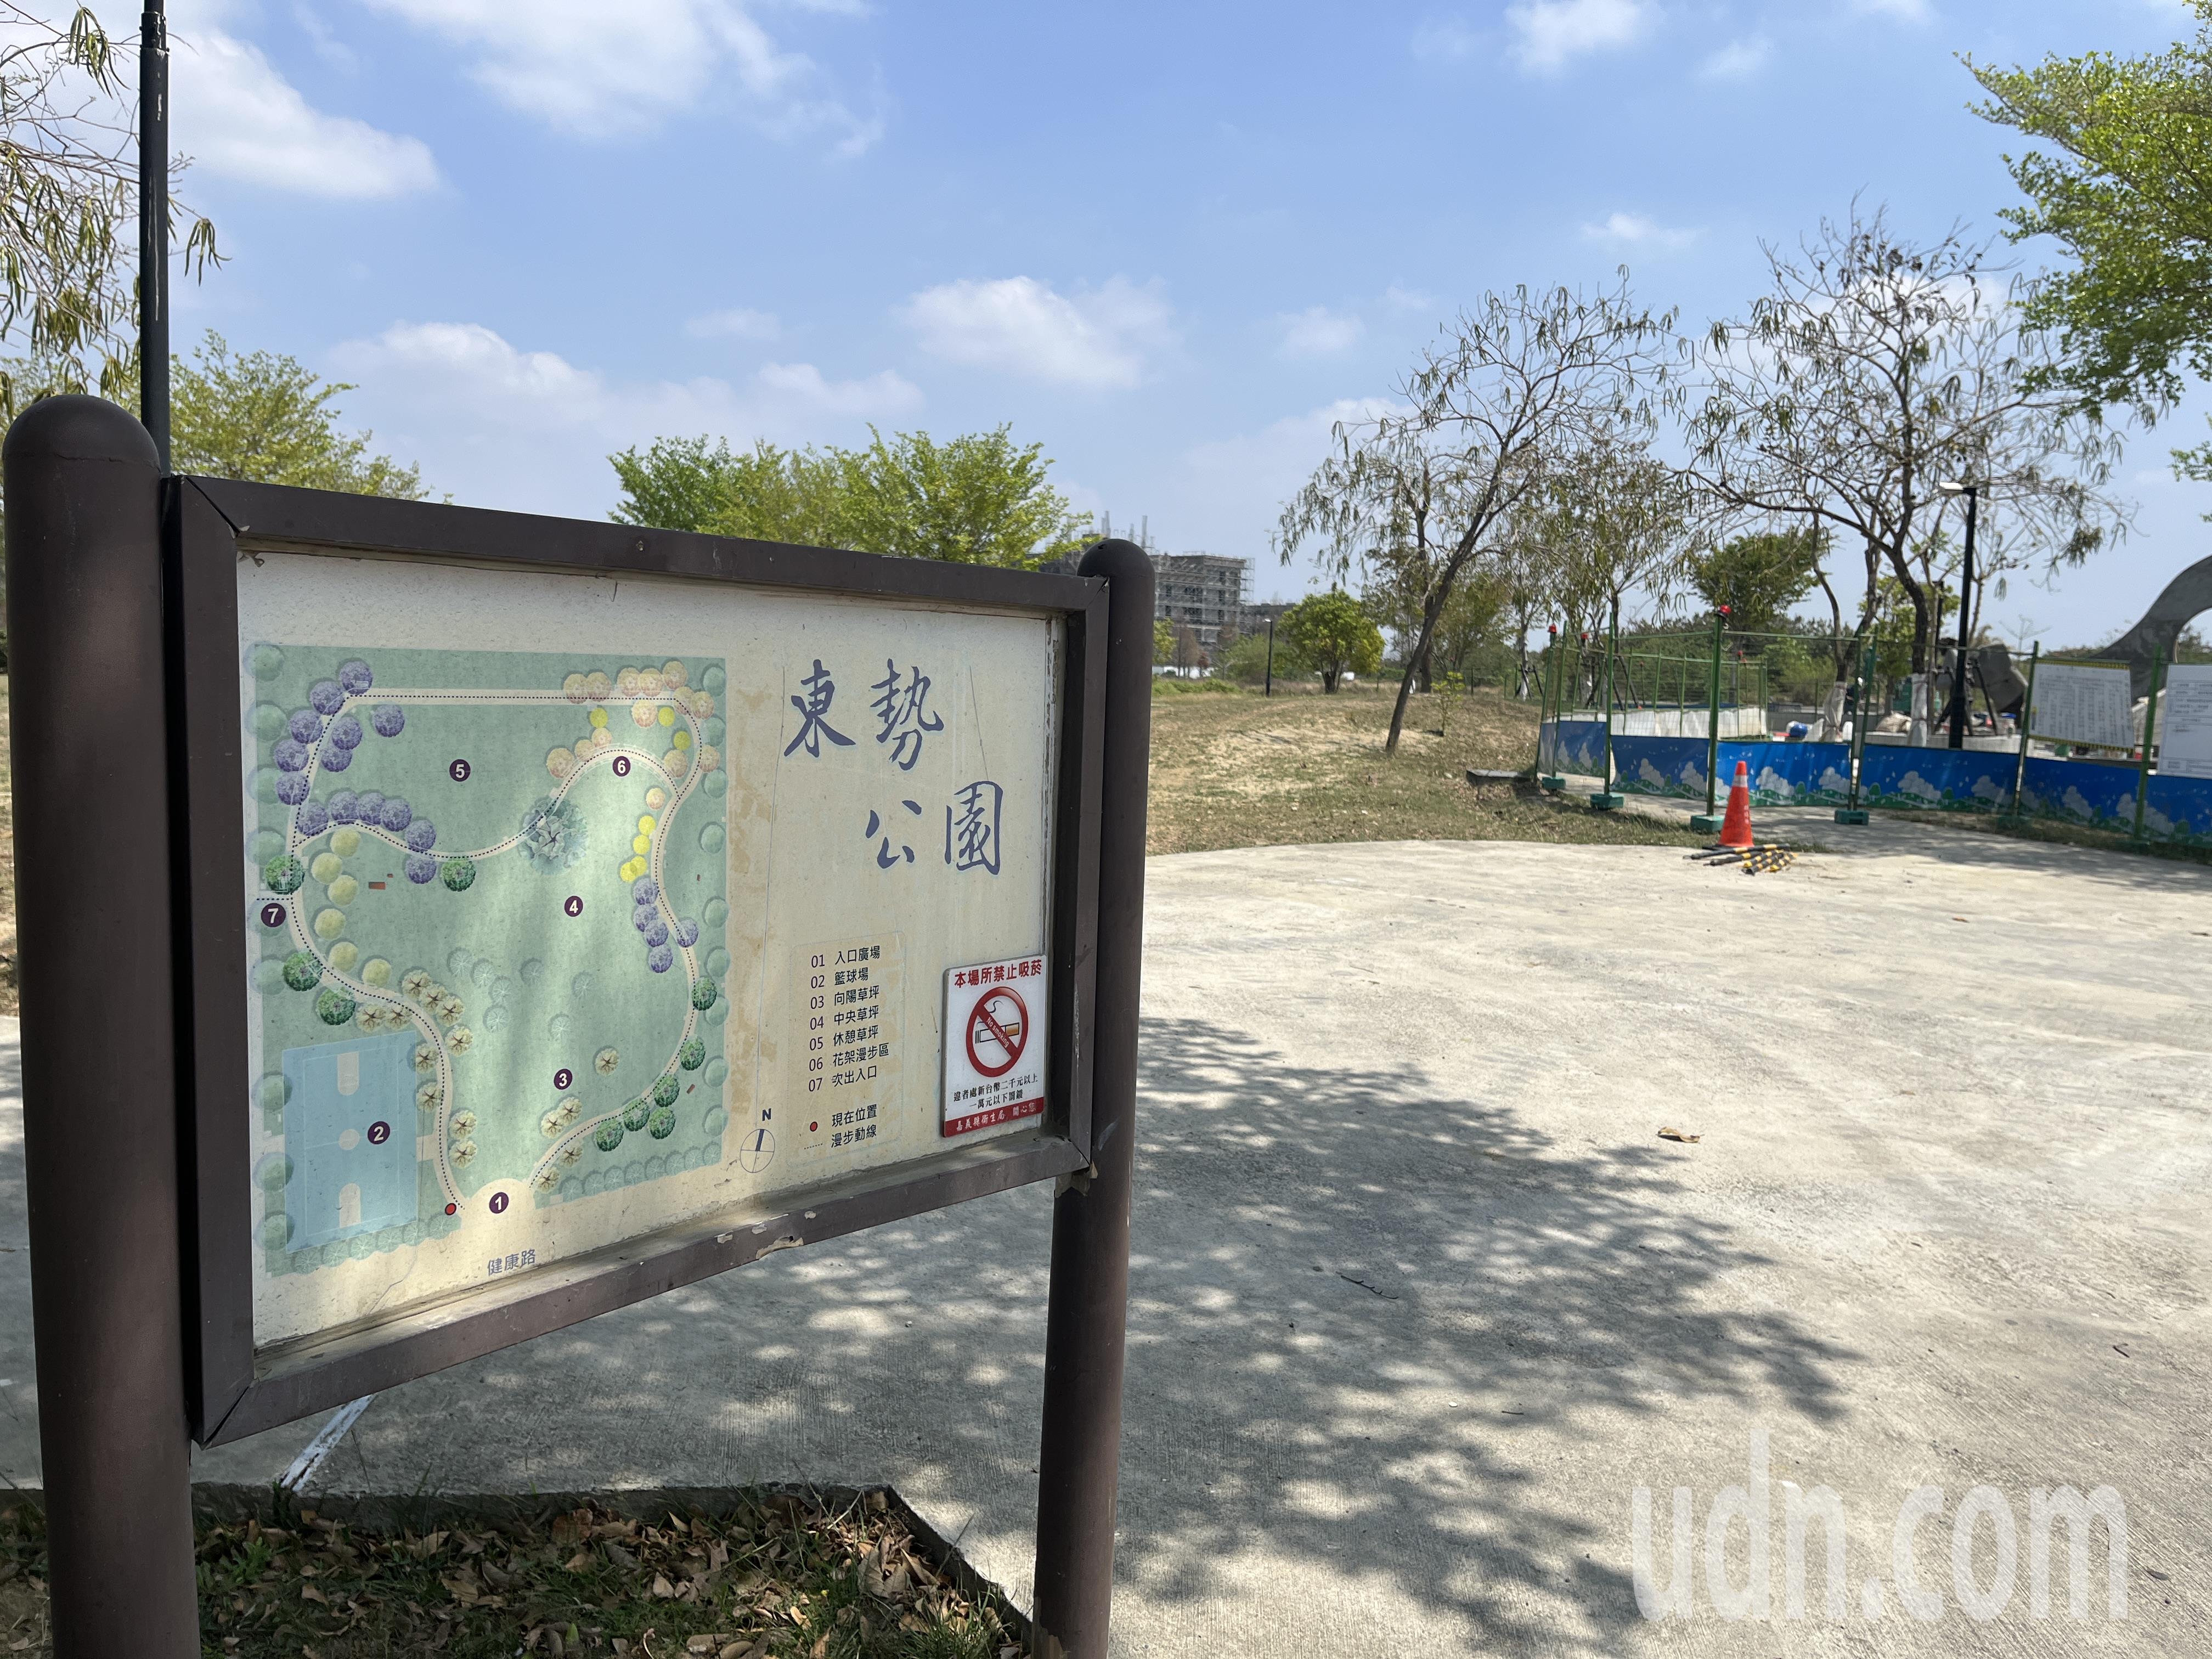 嘉义县政府进行东势公园儿童游戏场改善计划预计于今年6月前完工。记者李宗祐／摄影